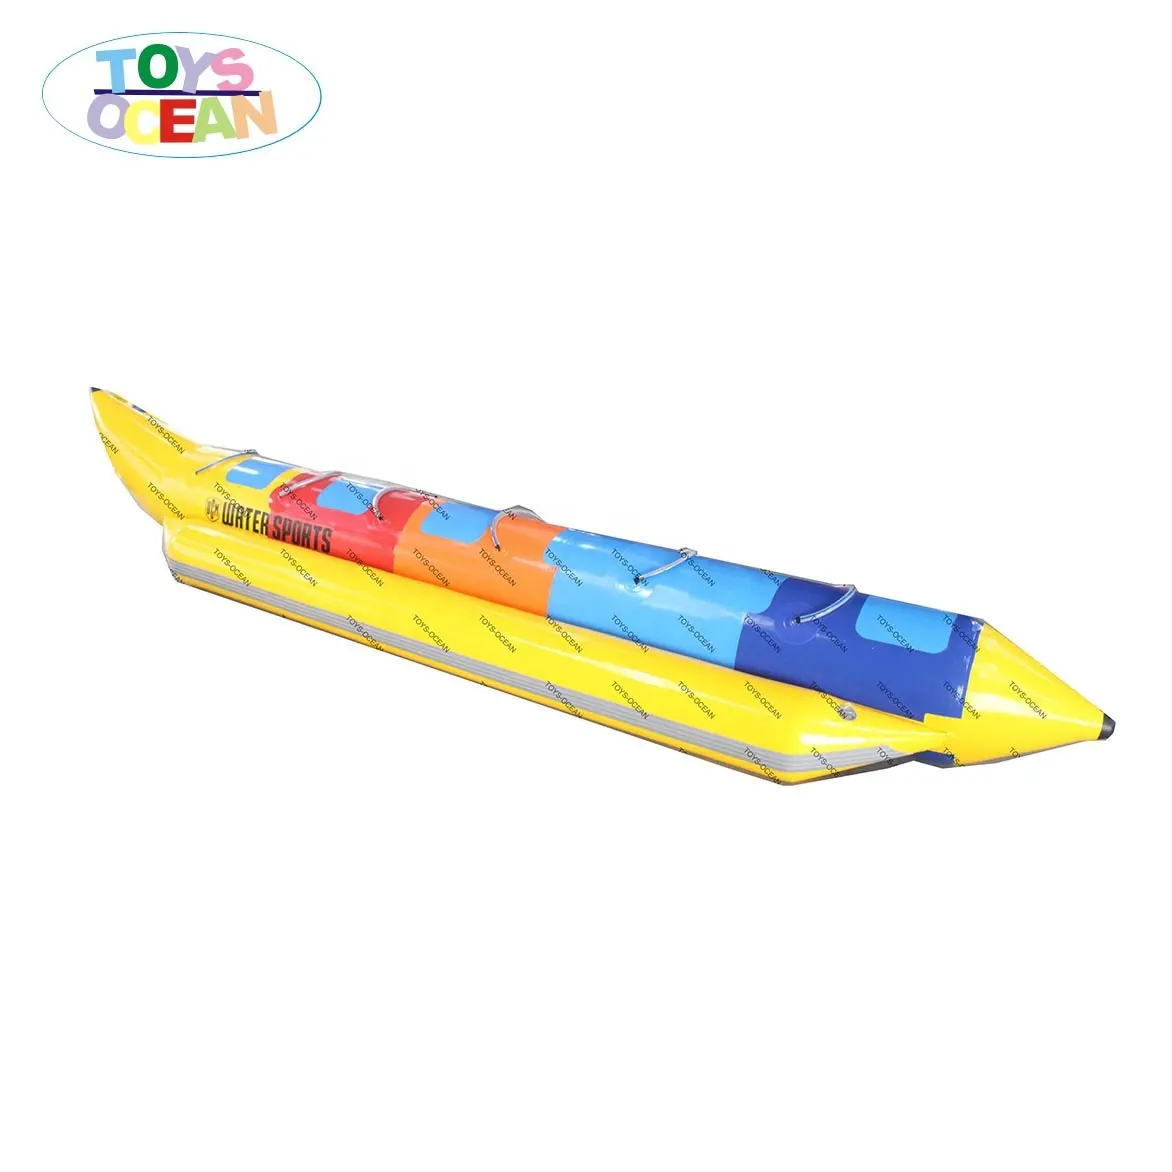 Doppio tubo gonfiabile galleggiante Banana Boat trainabile sport acquatici motorizzati